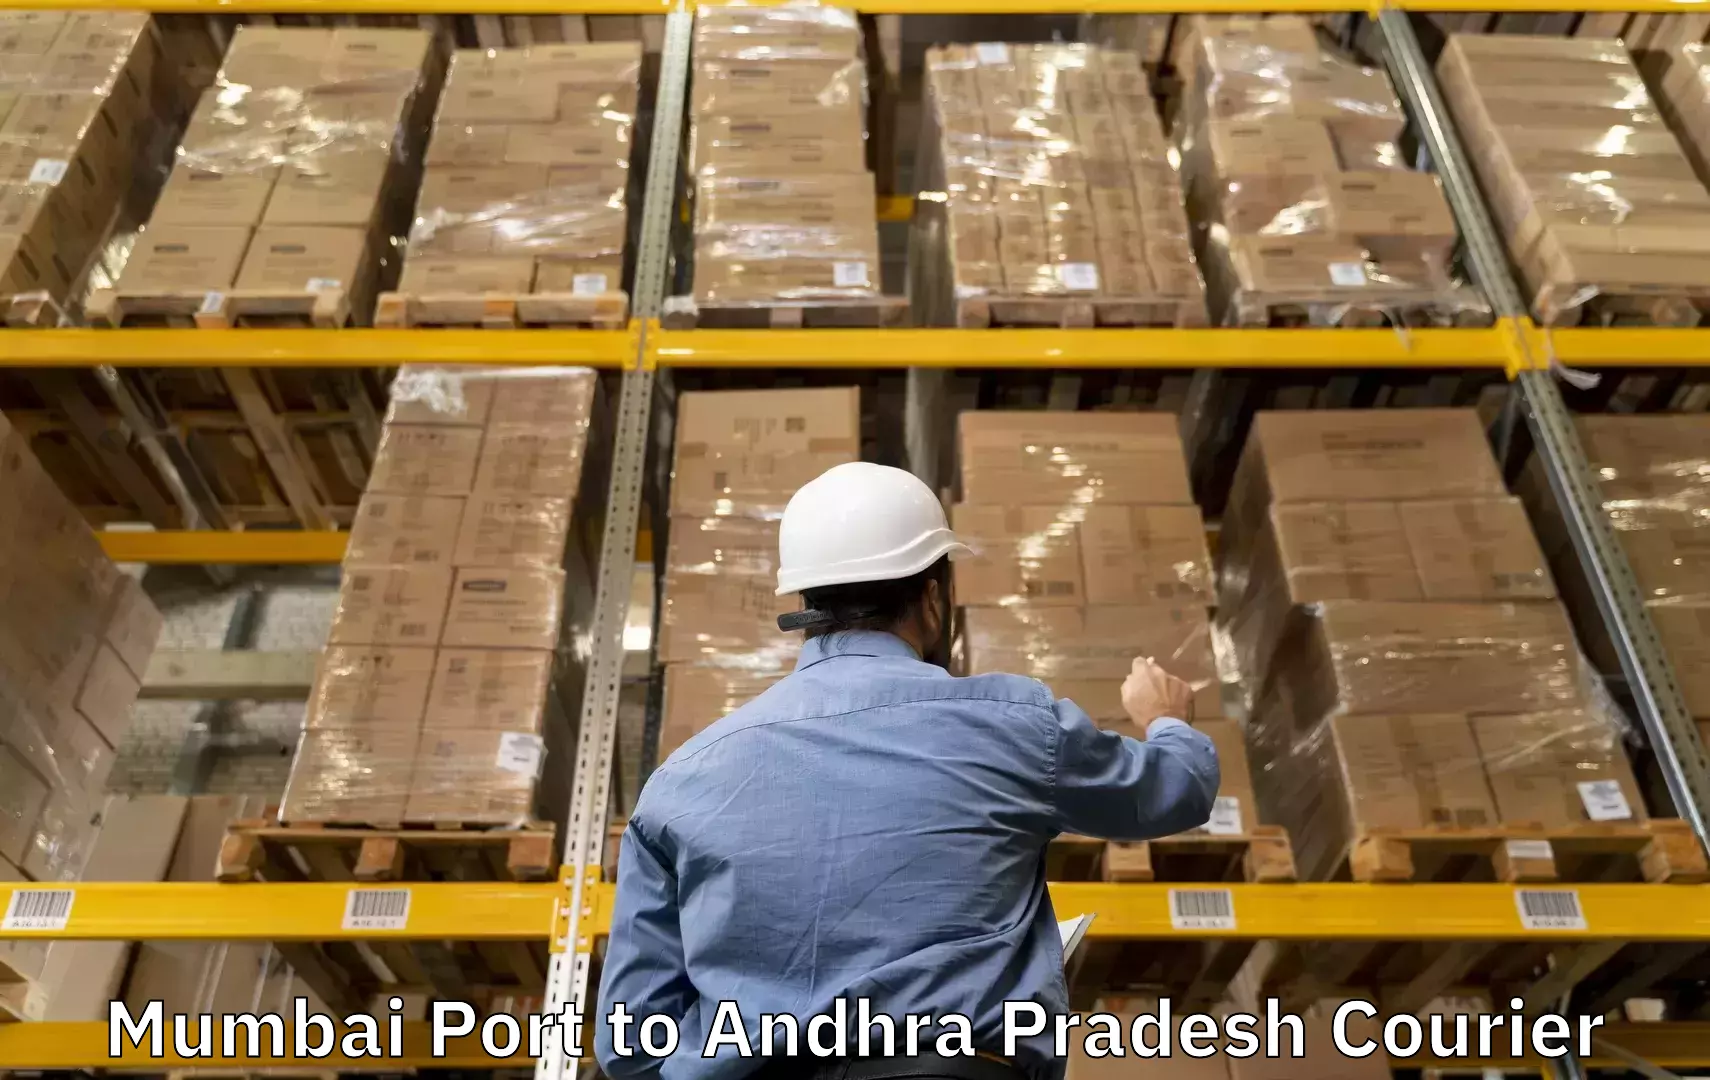 Luggage courier network Mumbai Port to Andhra Pradesh